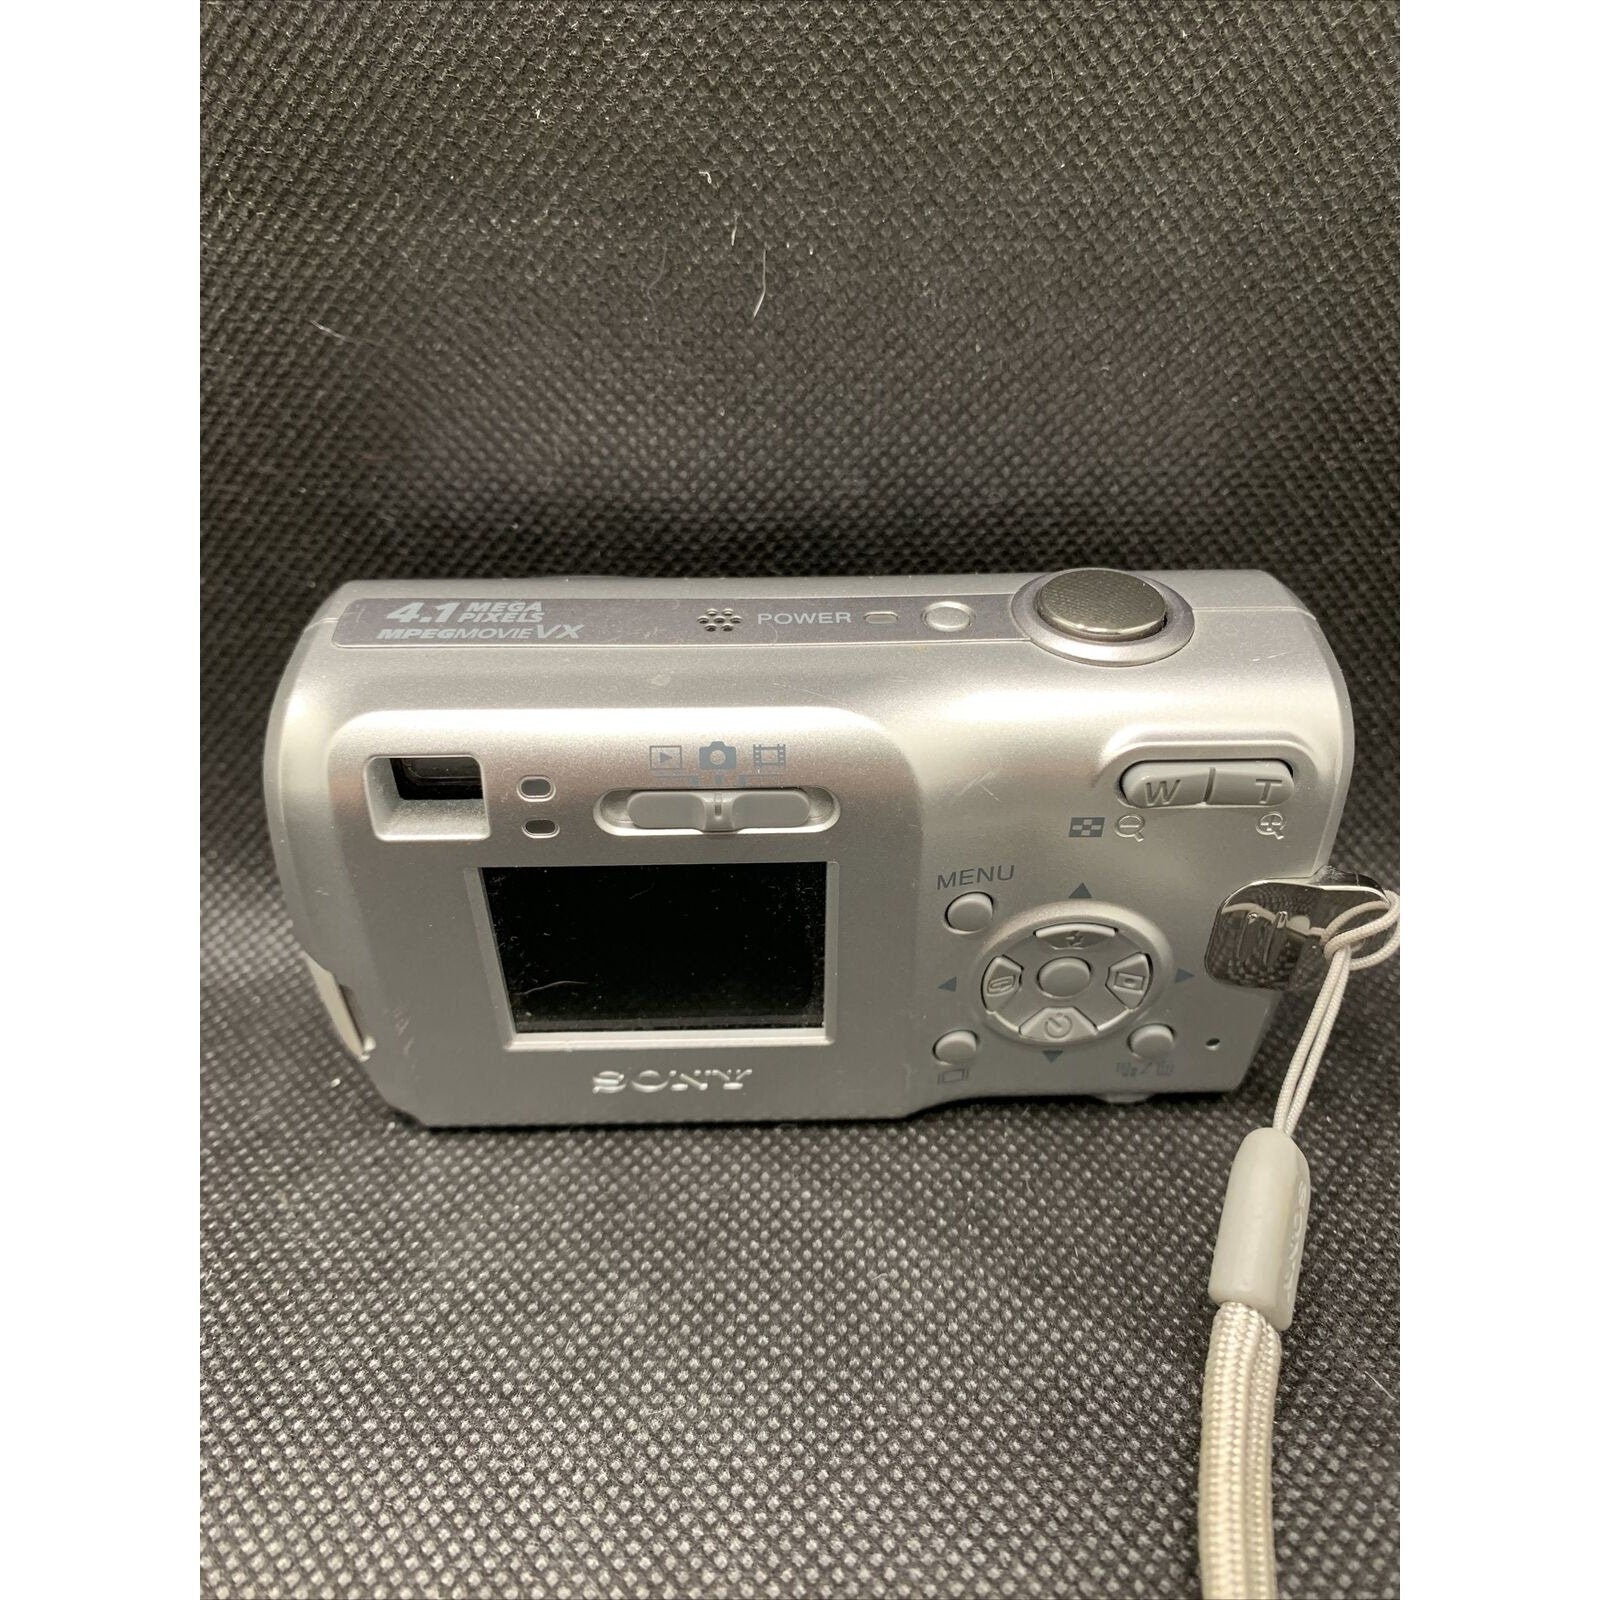 Sony Cybershot Camera DSC-S40